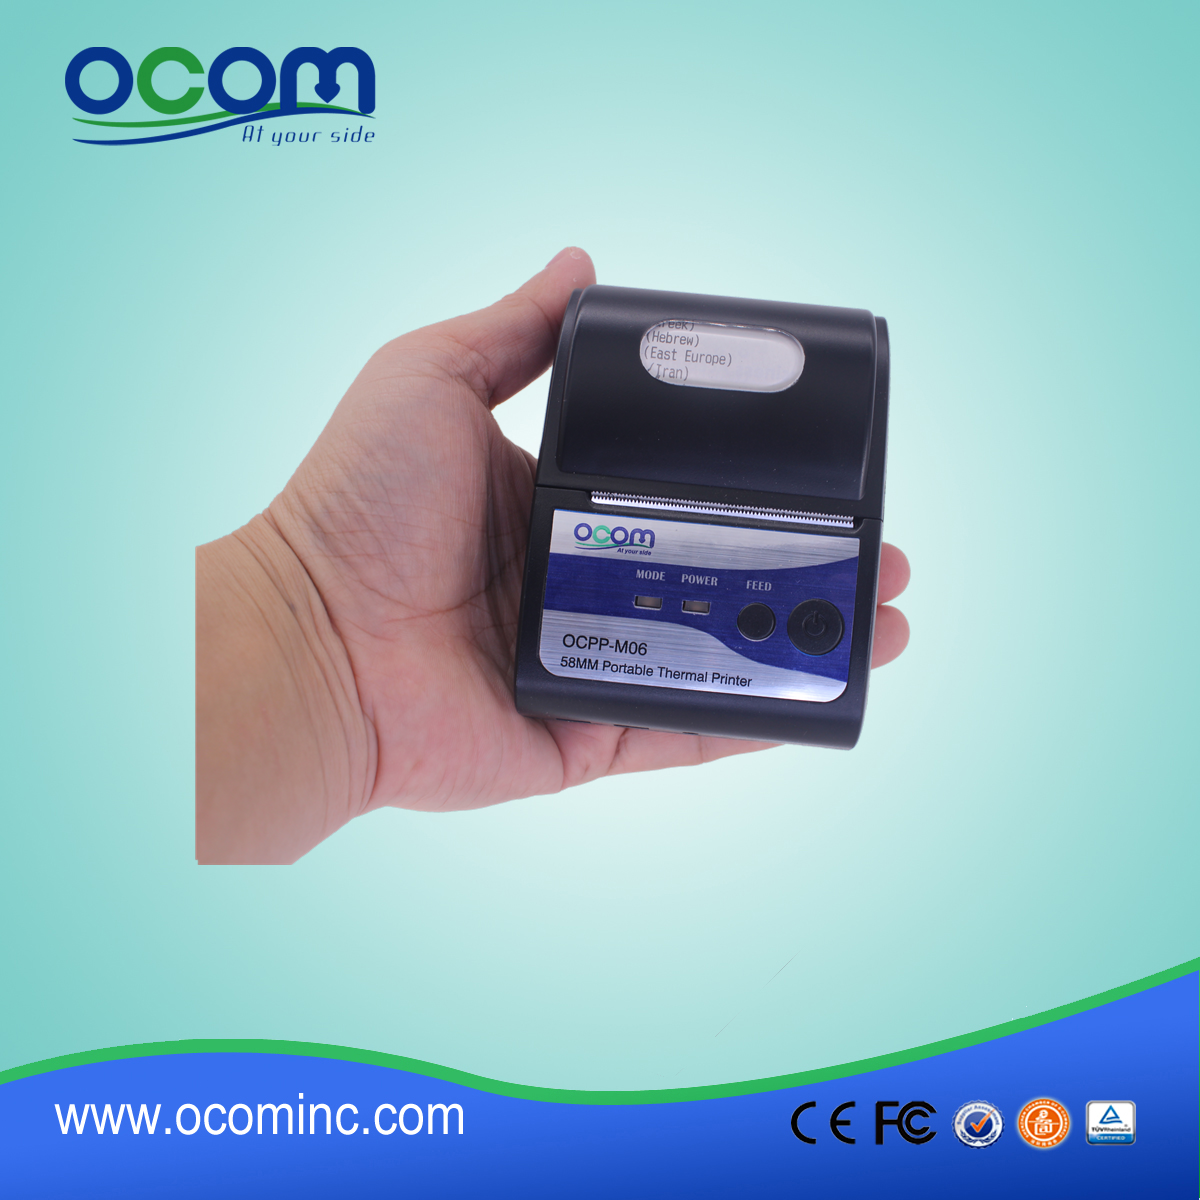 (OCPP-M06) OCOM Hot vender android impressora térmica do bluetooth